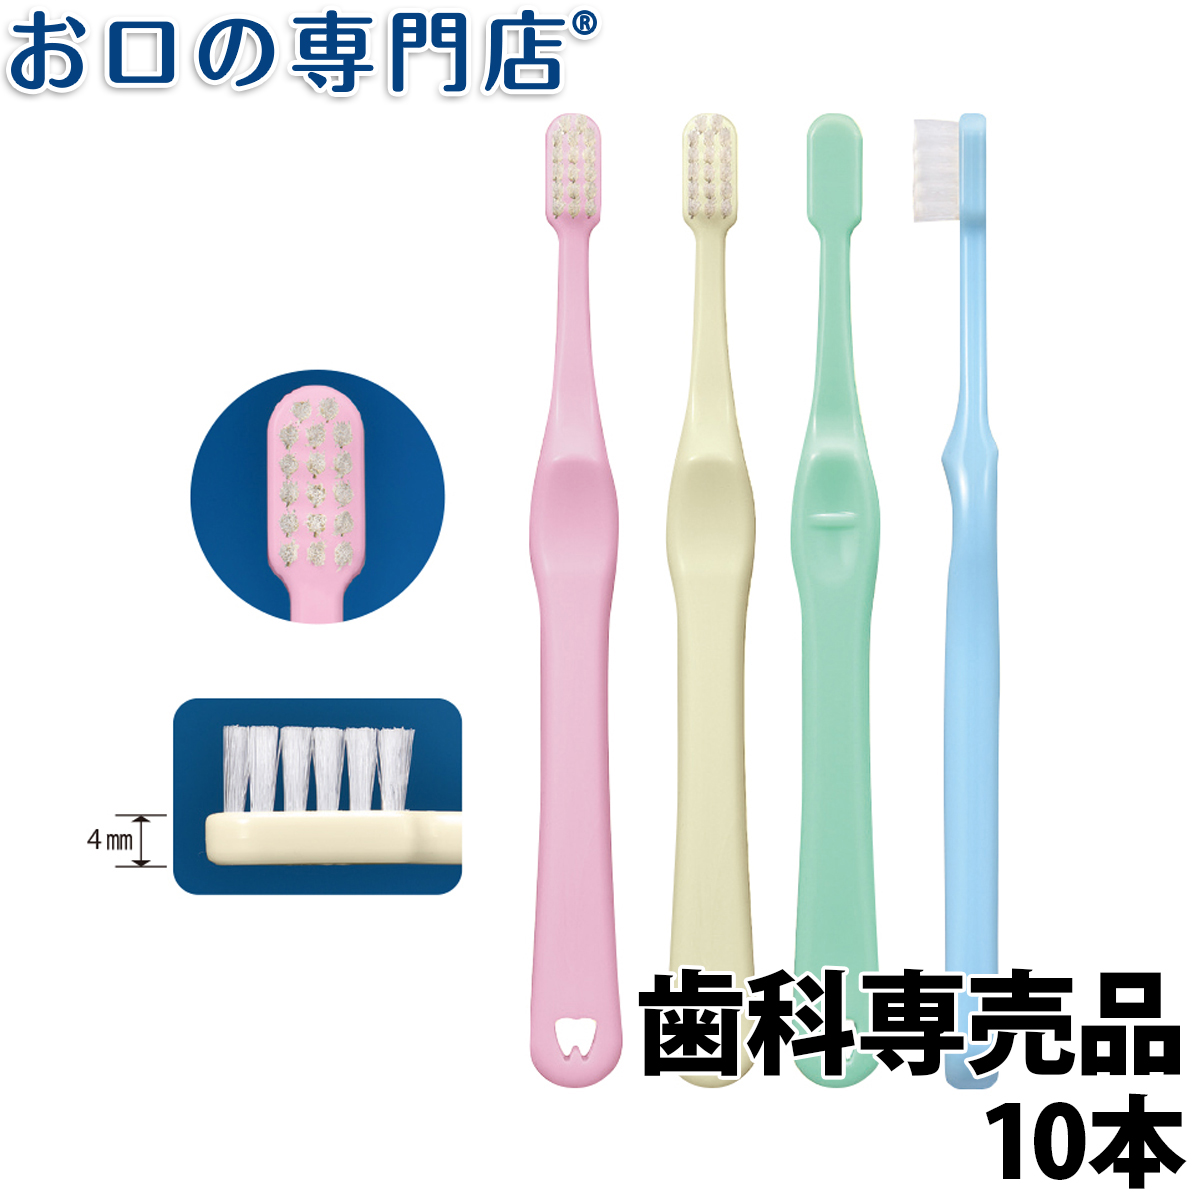 価格交渉OK送料無料 30本セット Ciシュワシュワ 歯科用子供歯ブラシ 日本製